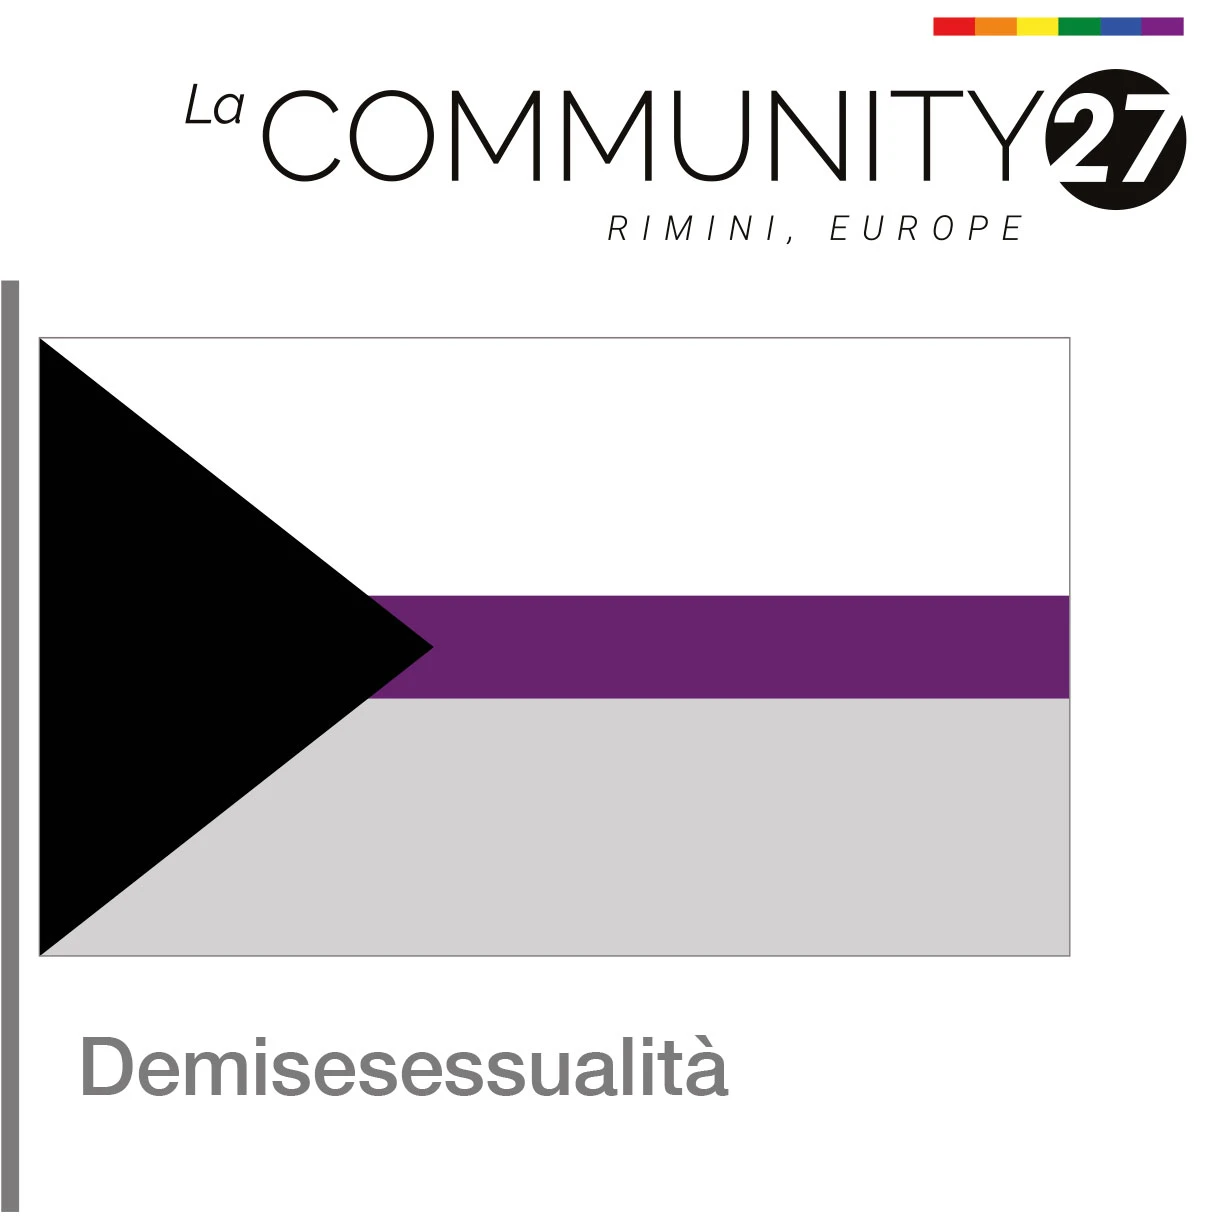 Demisessualità - bandiera LGBTQ in uso - La Communty 27